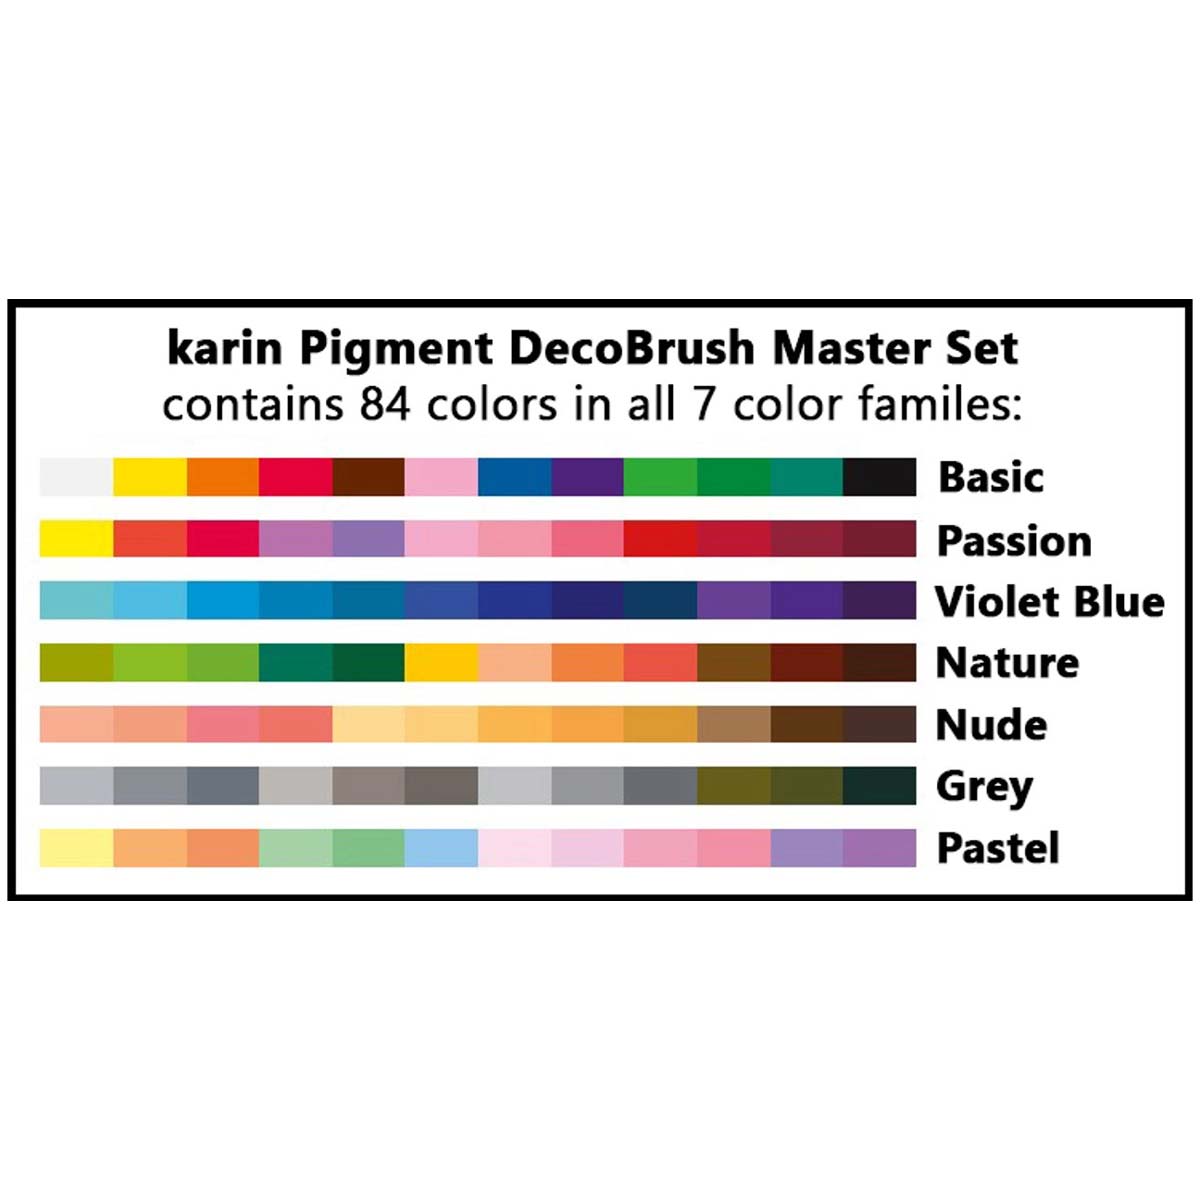 مجموعه کامل پیگمنت دکو براش کارین مدل Pigment Decobrush